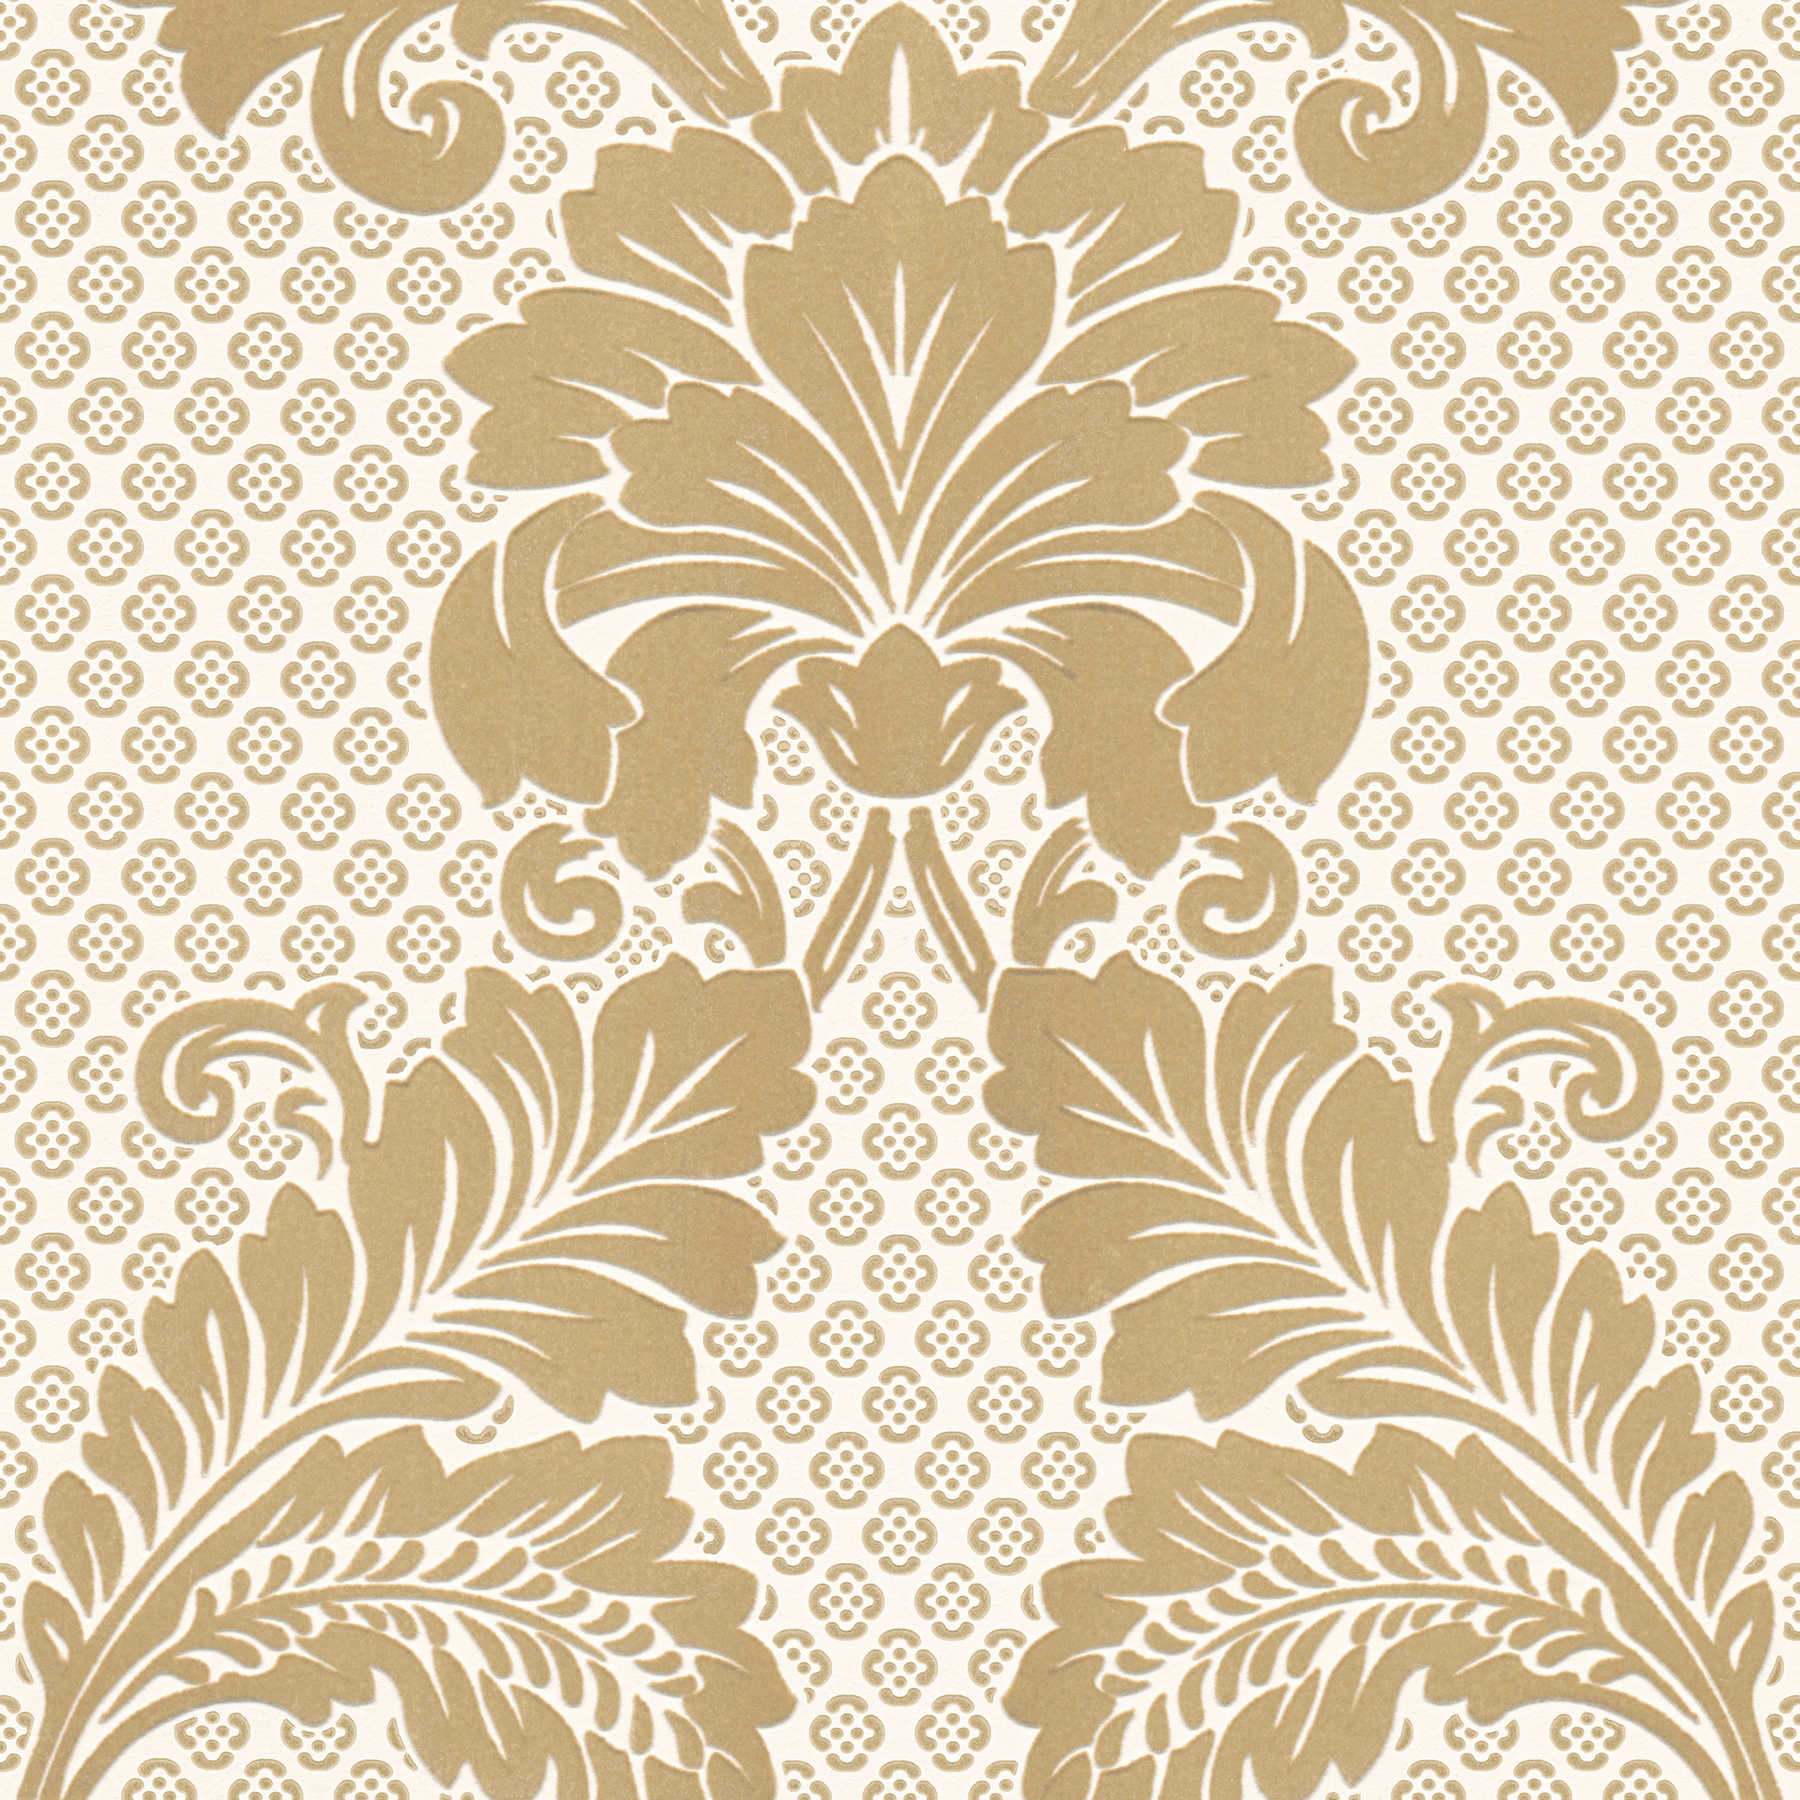 Papier peint à motifs ornementaux avec grand motif floral - or, crème
